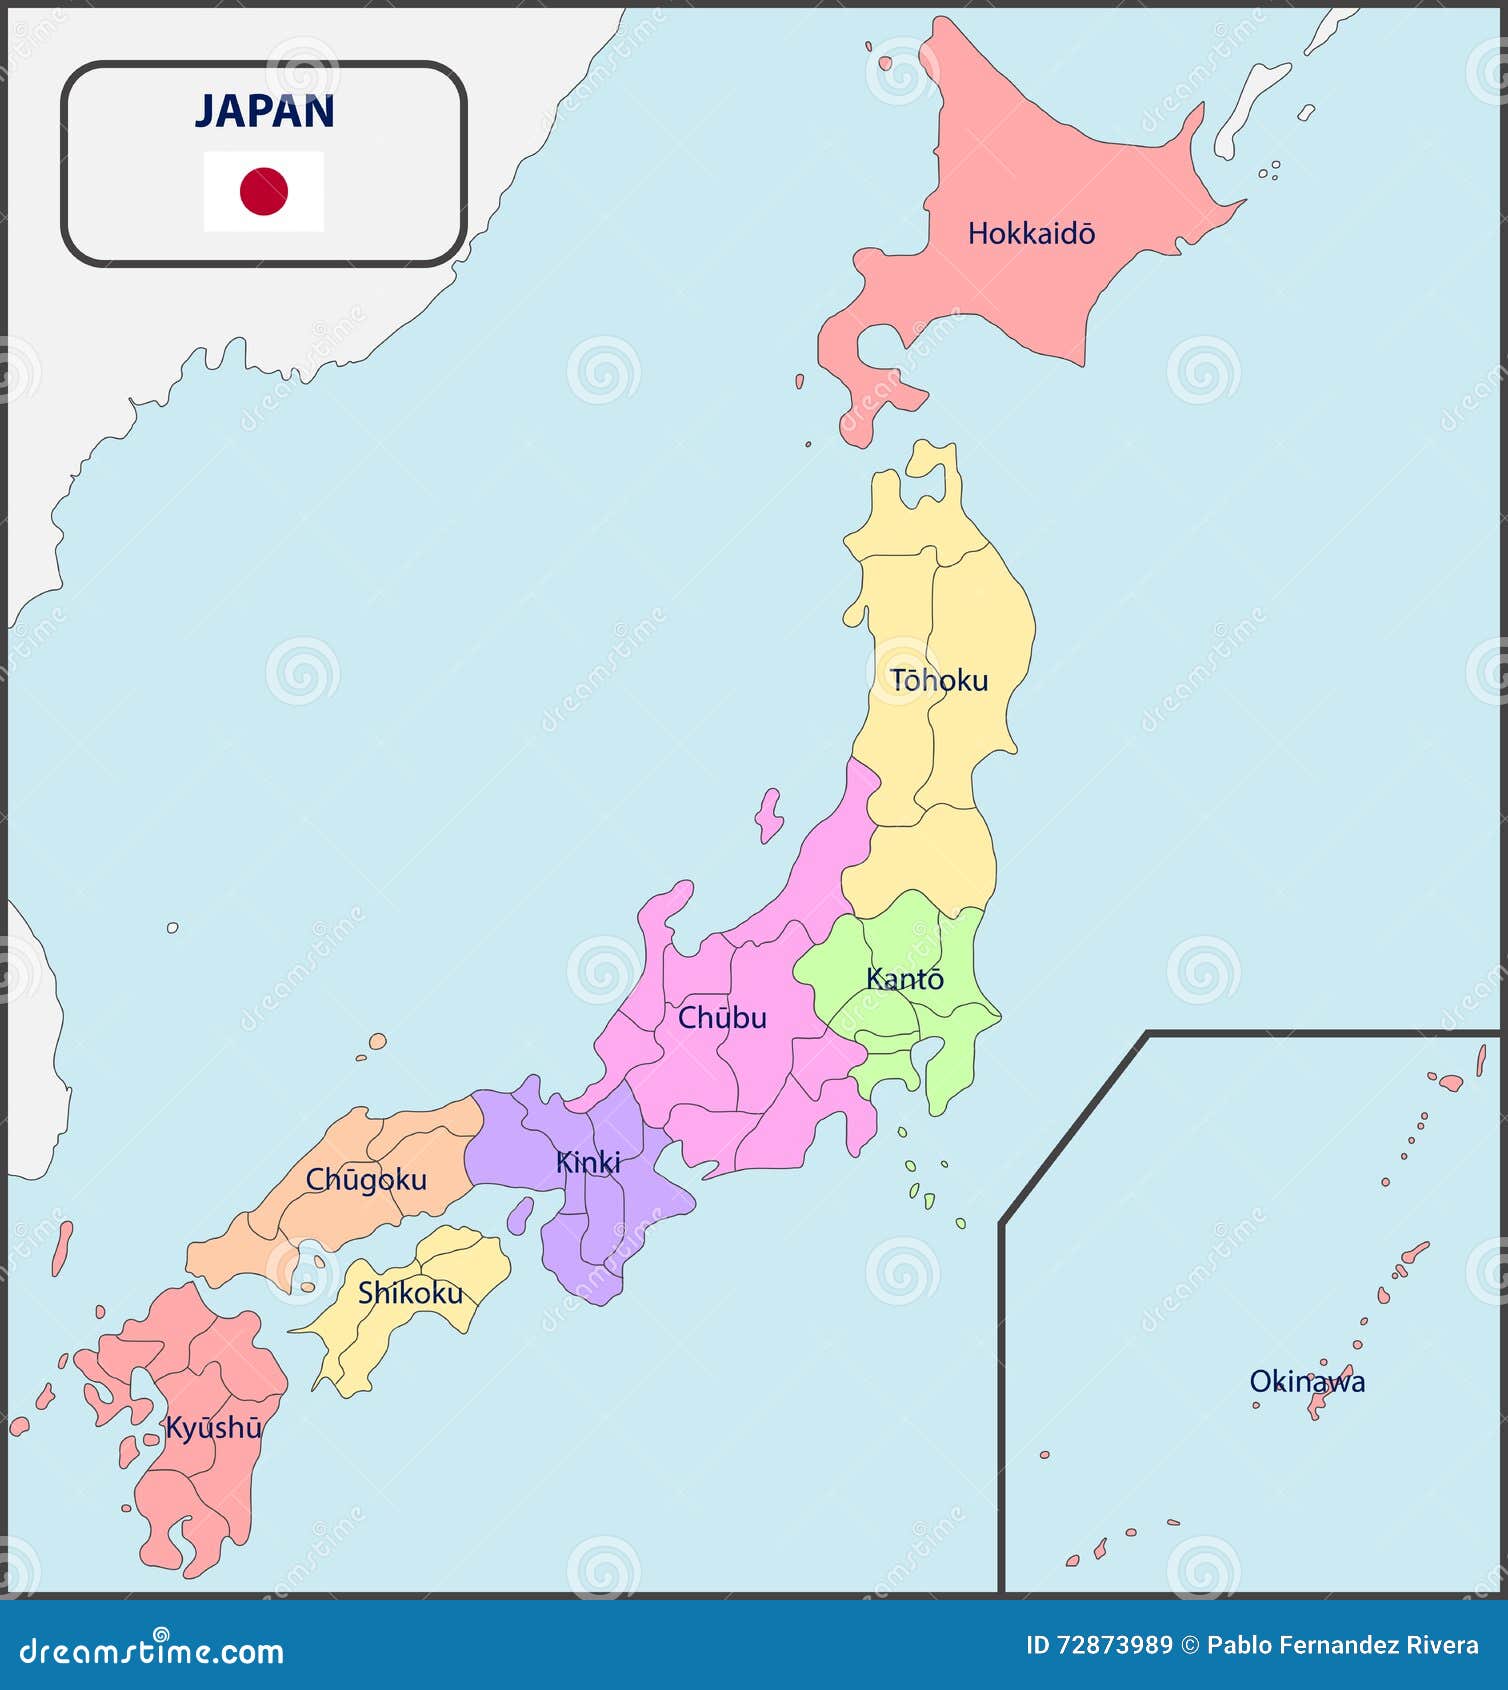 mapa poltico de japn con nombres 72873989